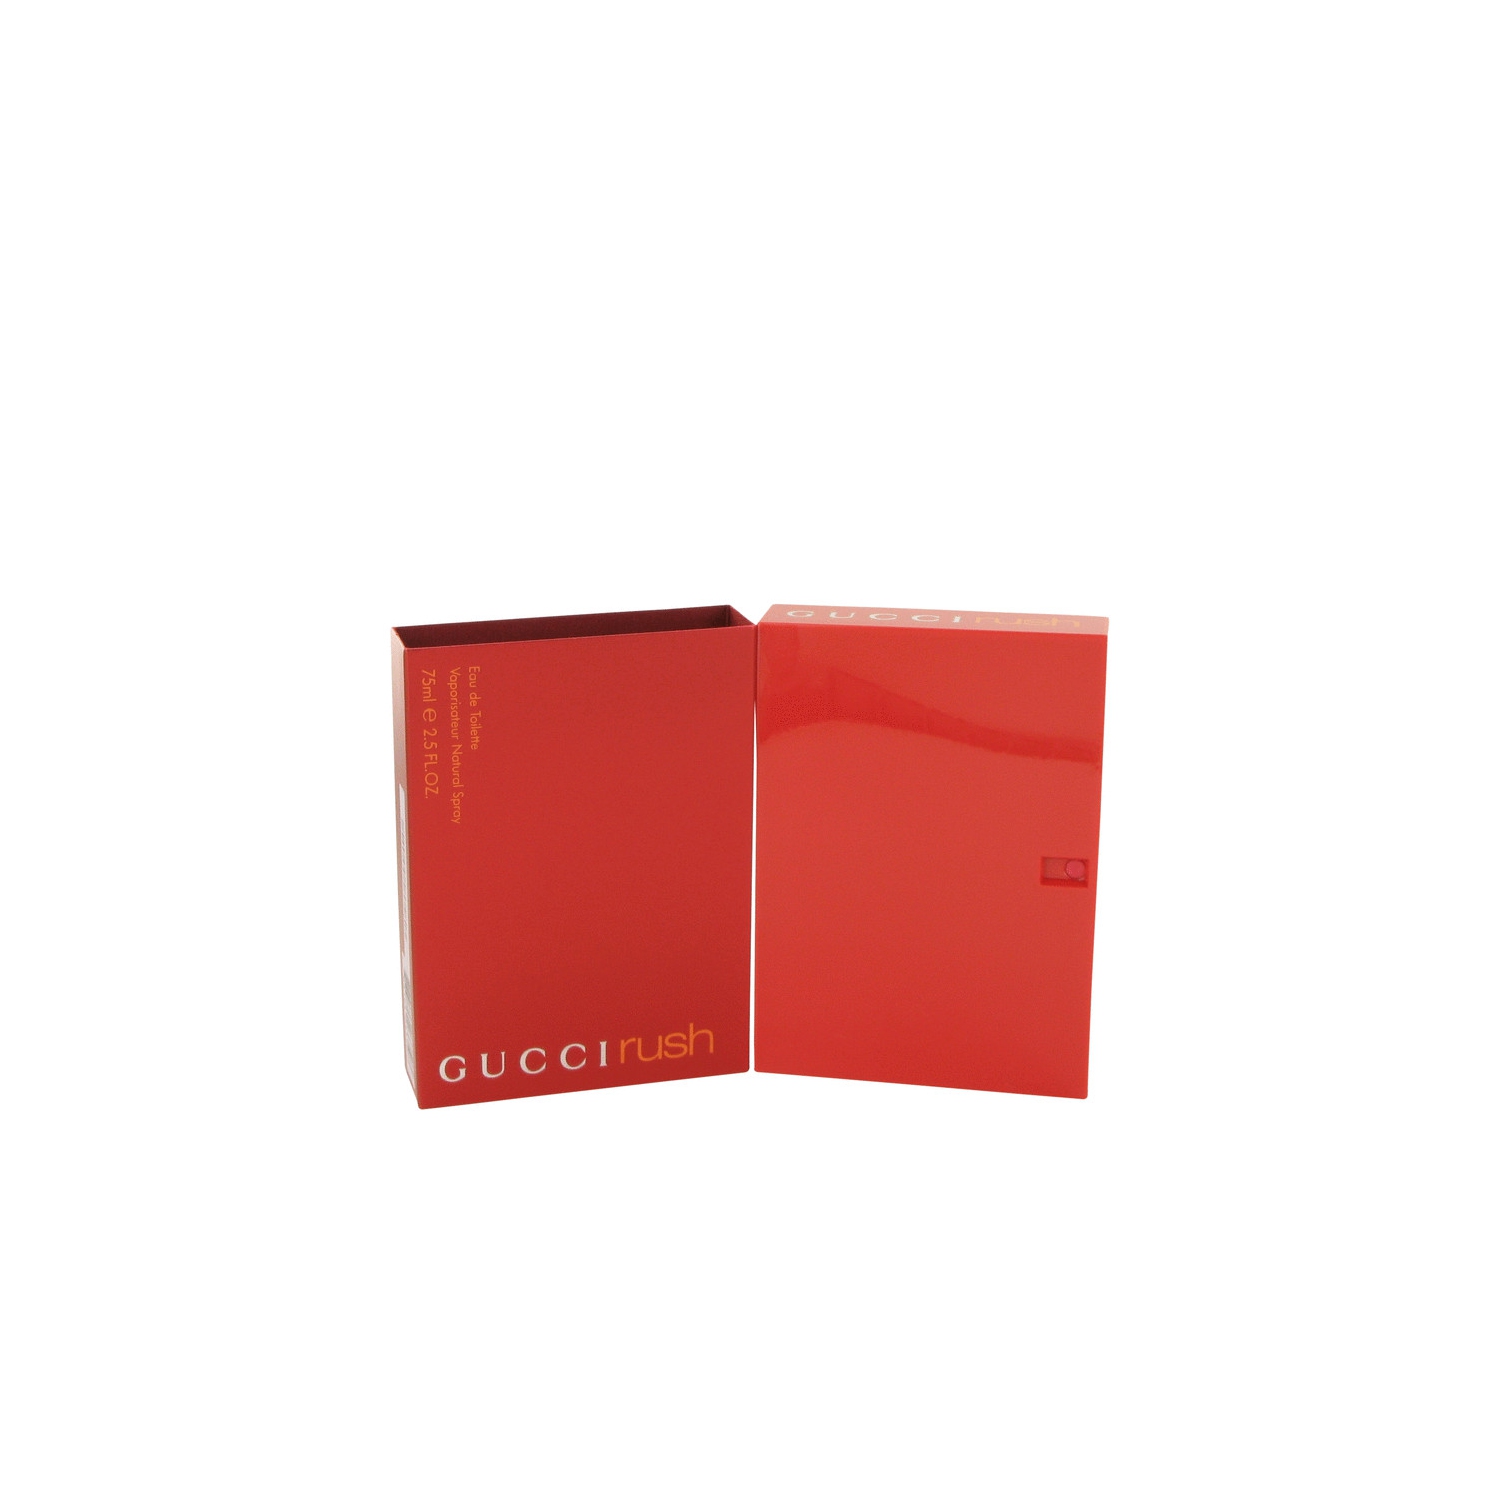 Gucci Rush W 75 Ml Boxed